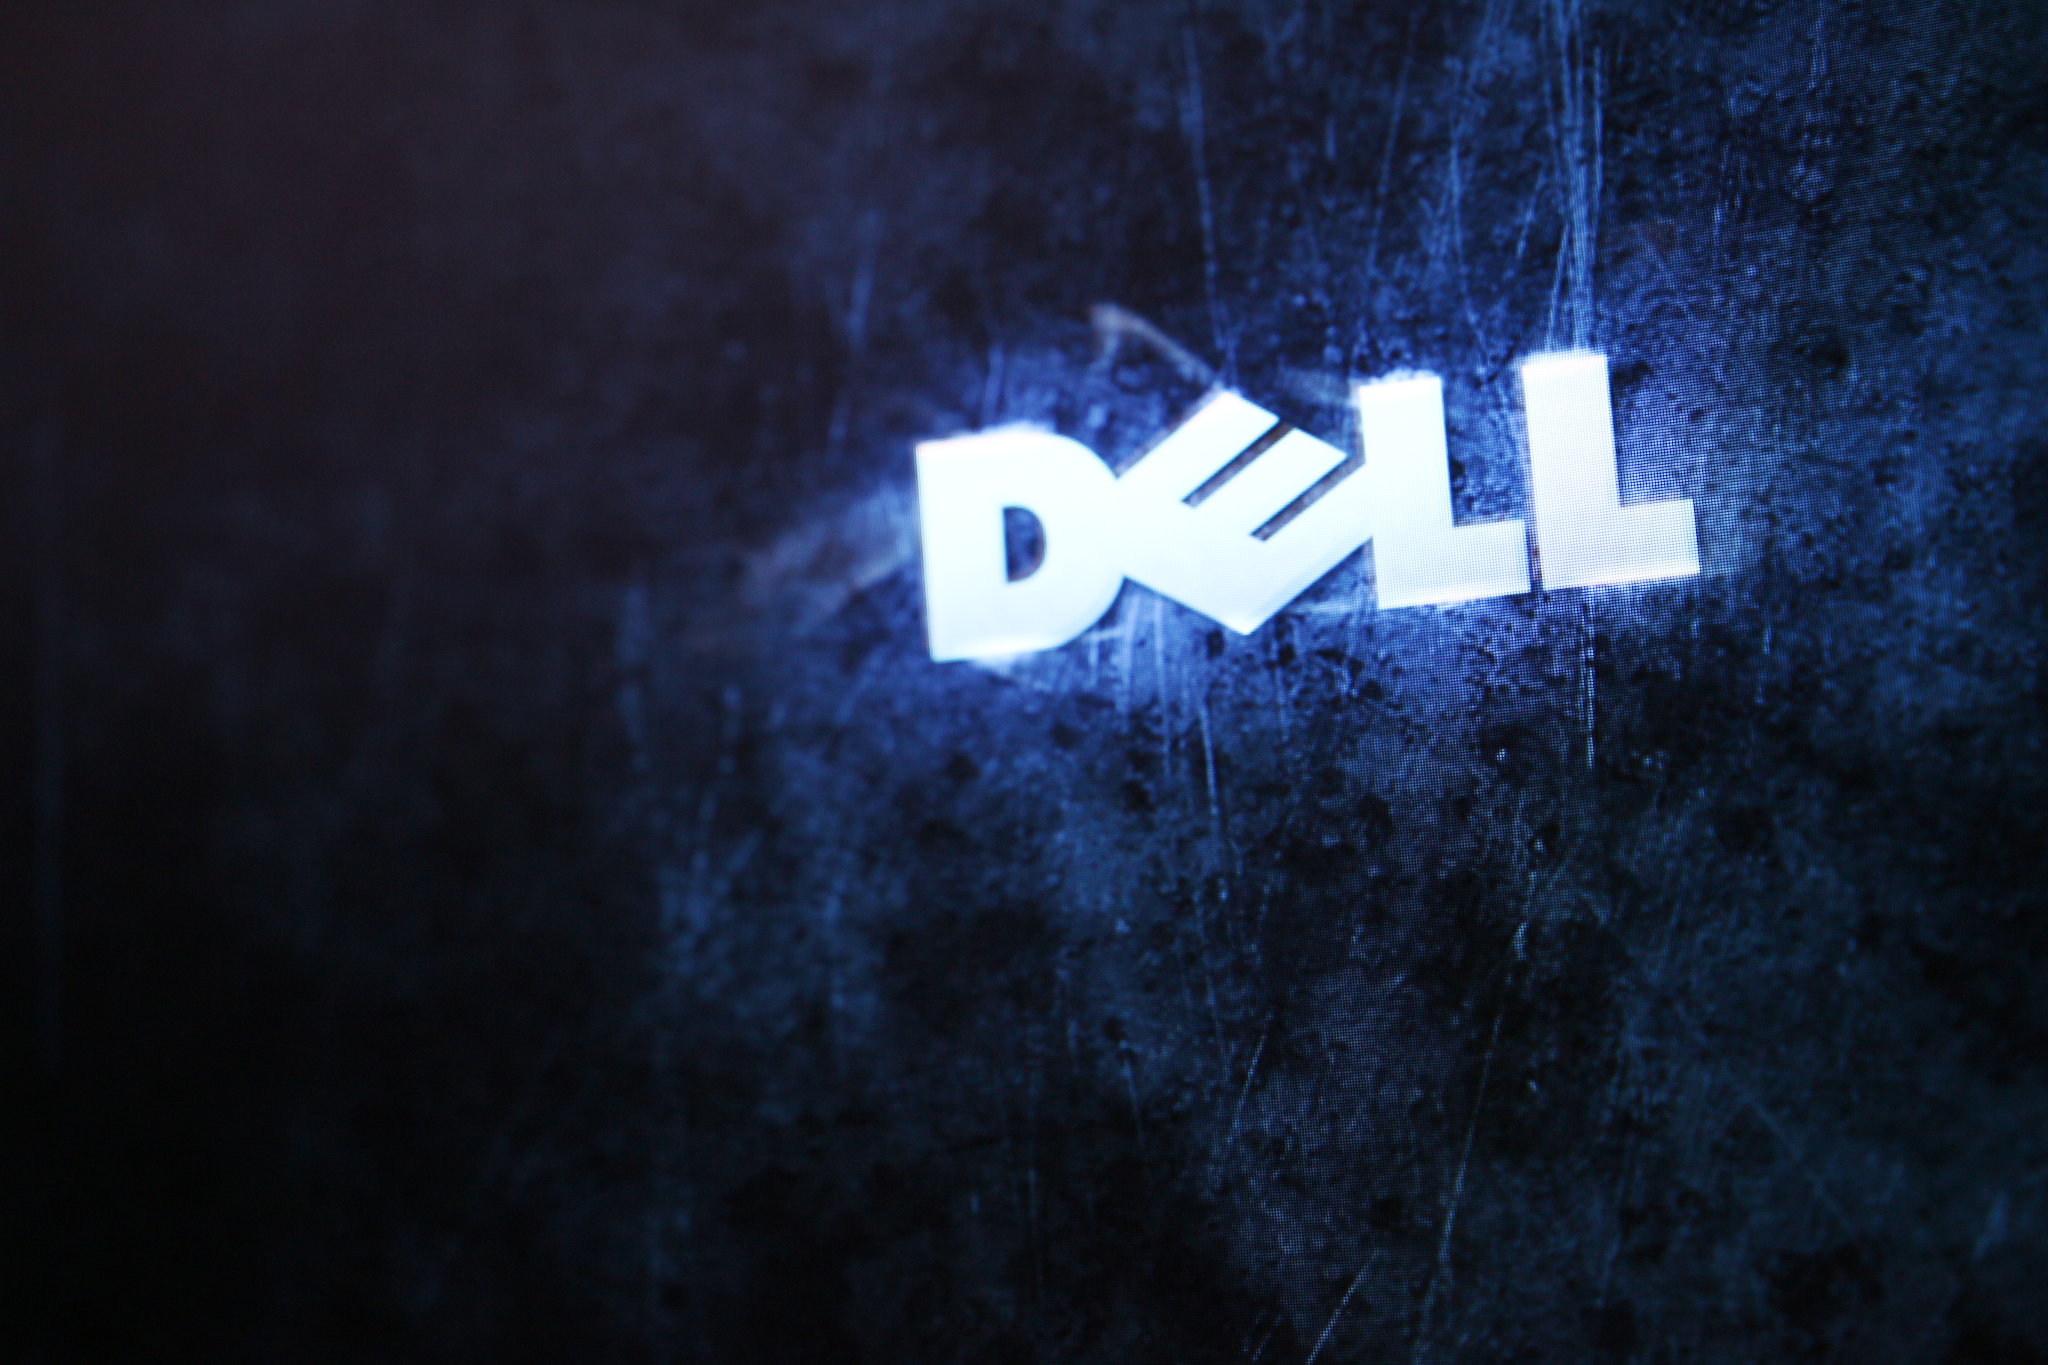 Dell Wallpapers Hd Pixelstalk Net